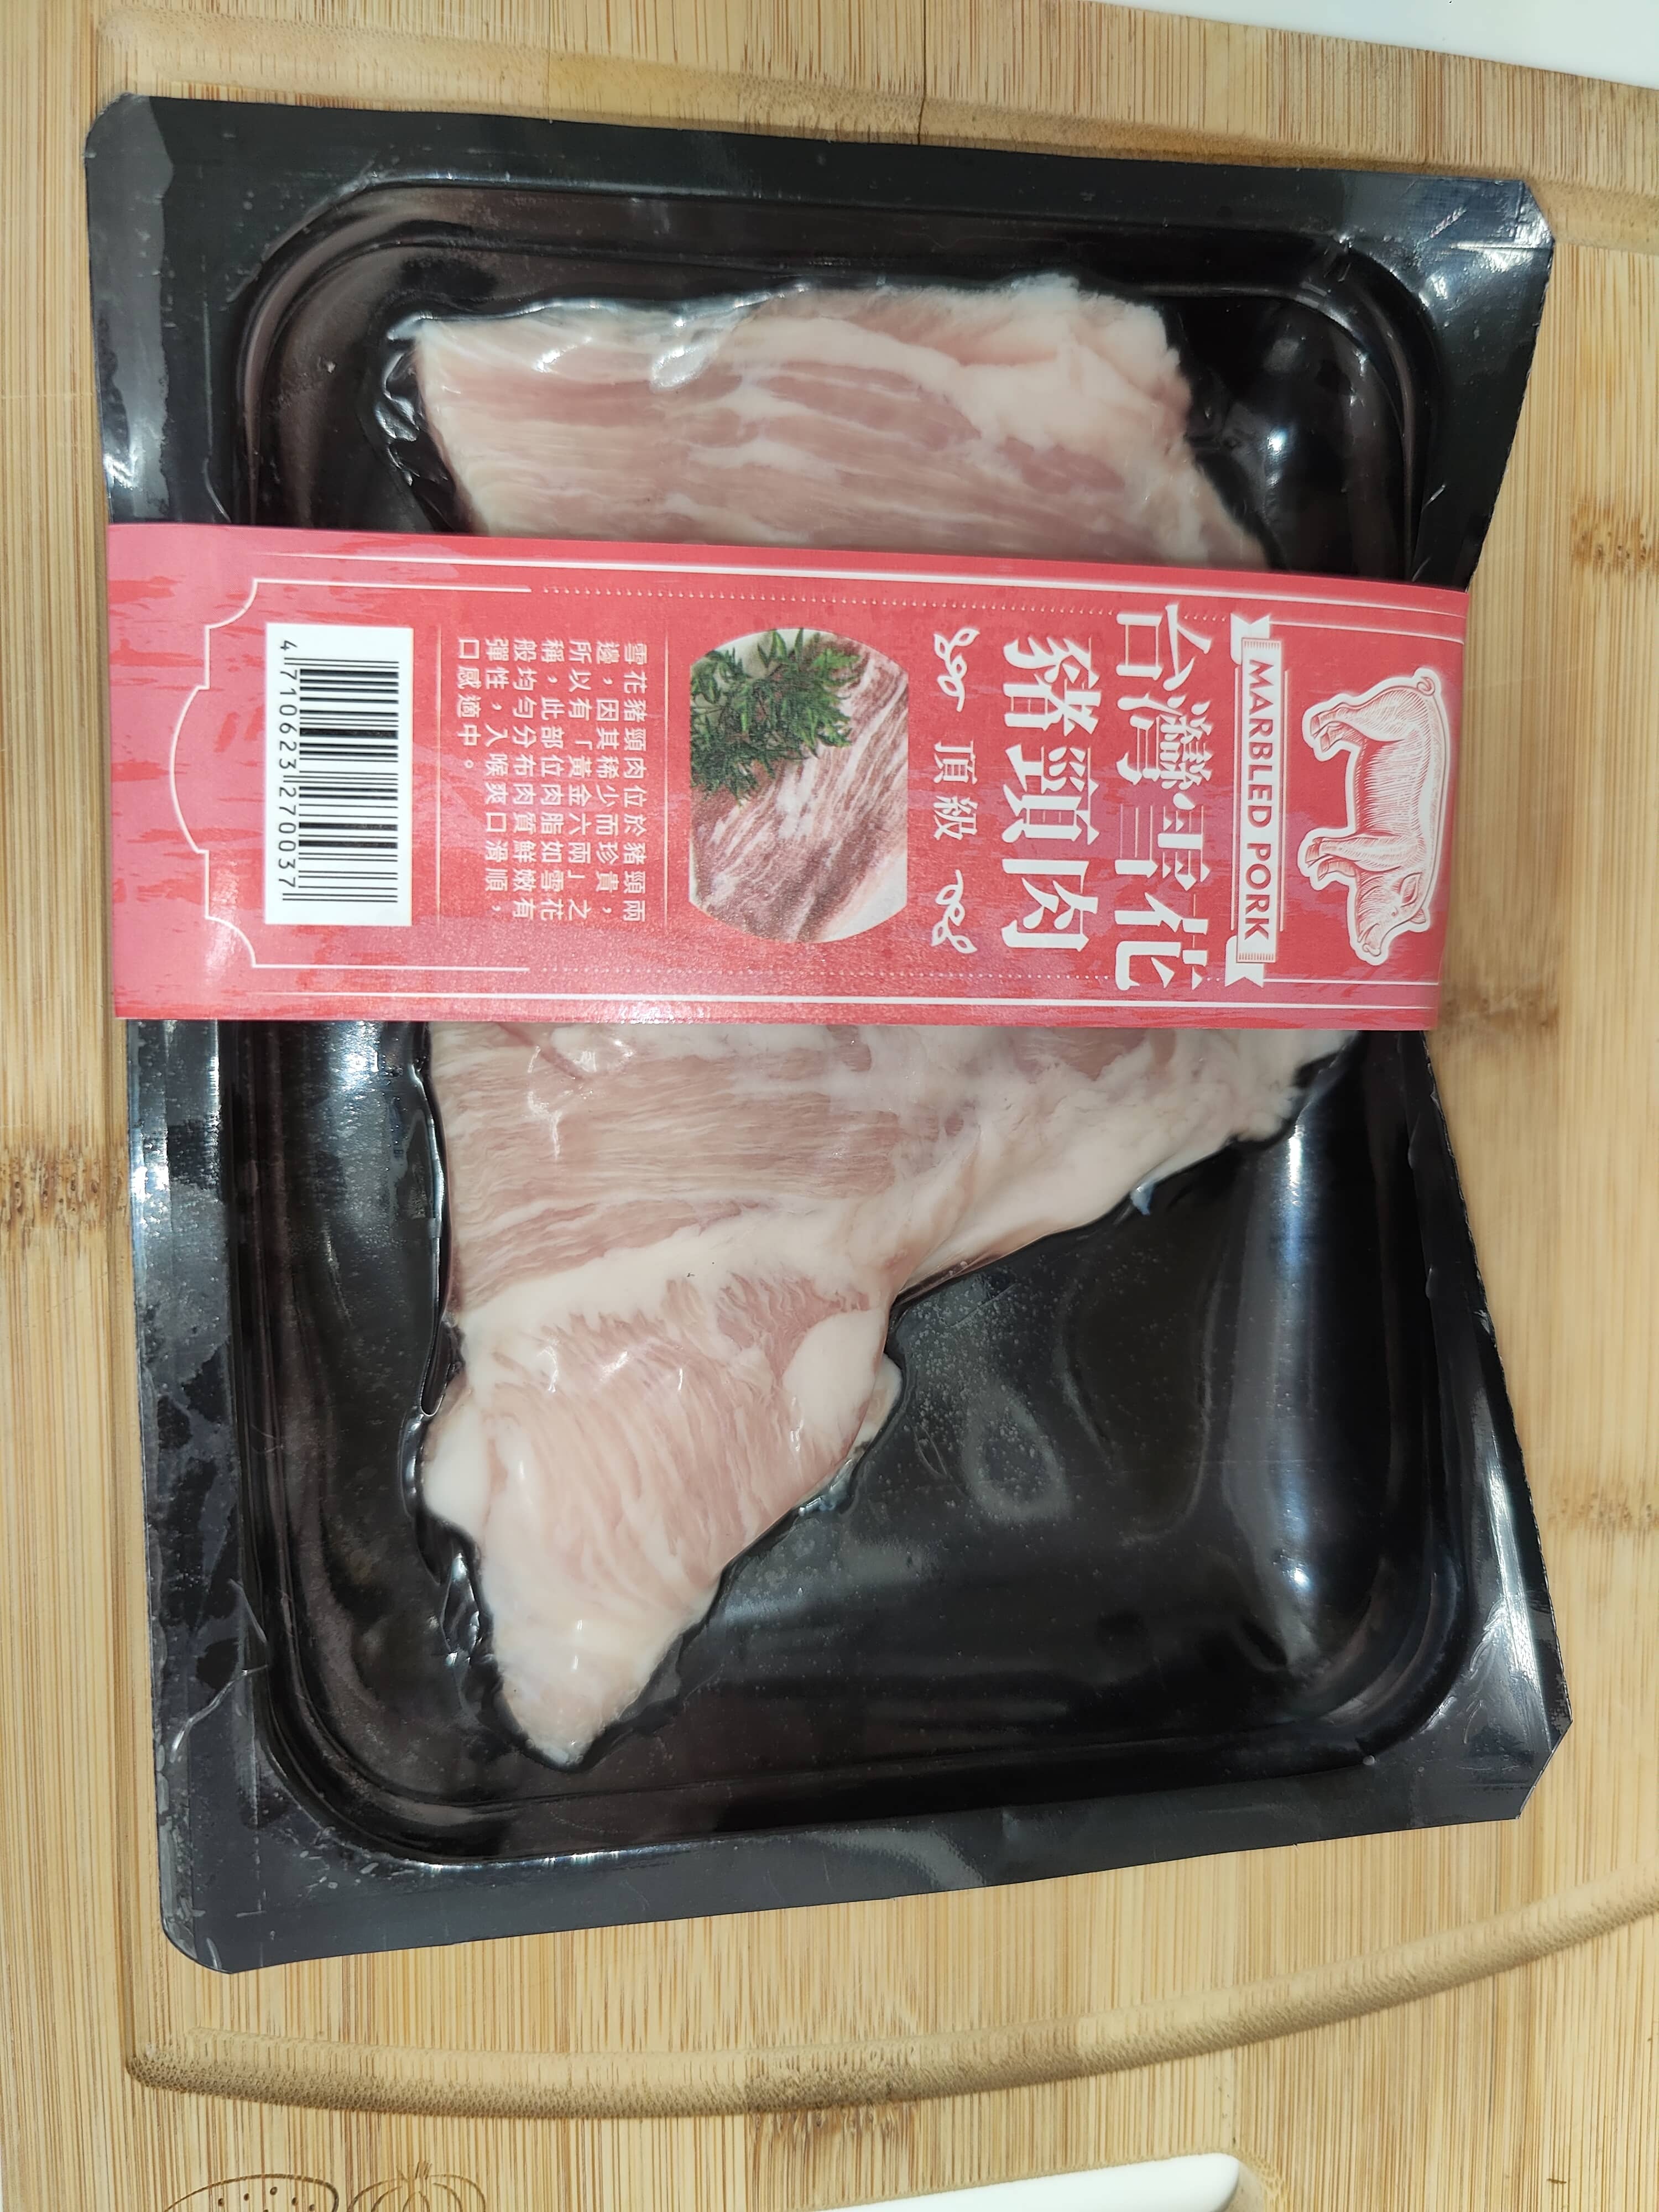 豬頸肉/松坂肉 購買自全聯